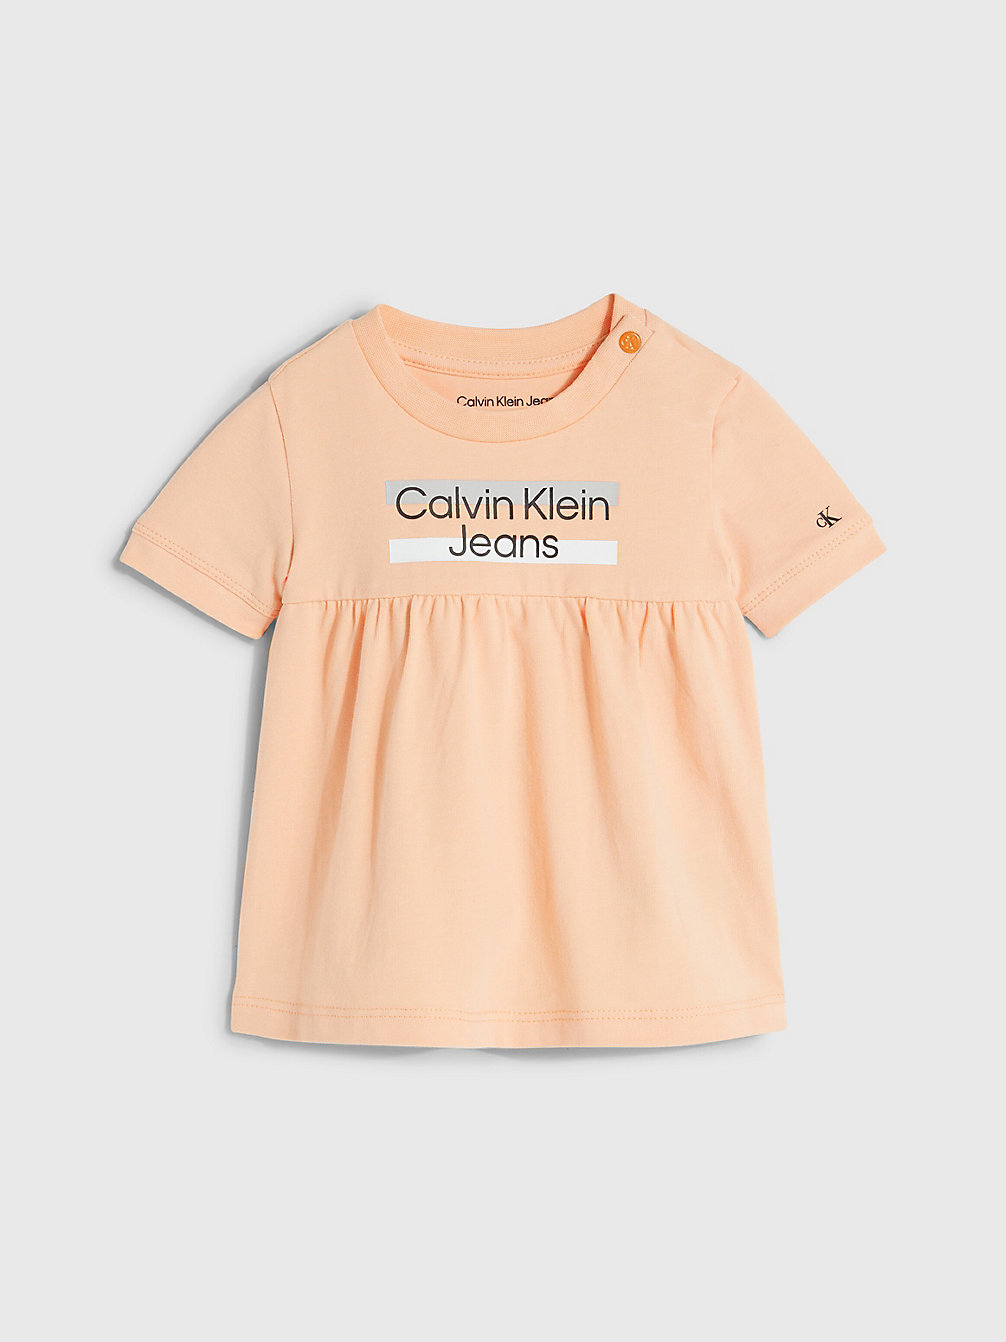 FRESH CANTALOUPE Robe Avec Logo Pour Nouveau-Né undefined undefined Calvin Klein